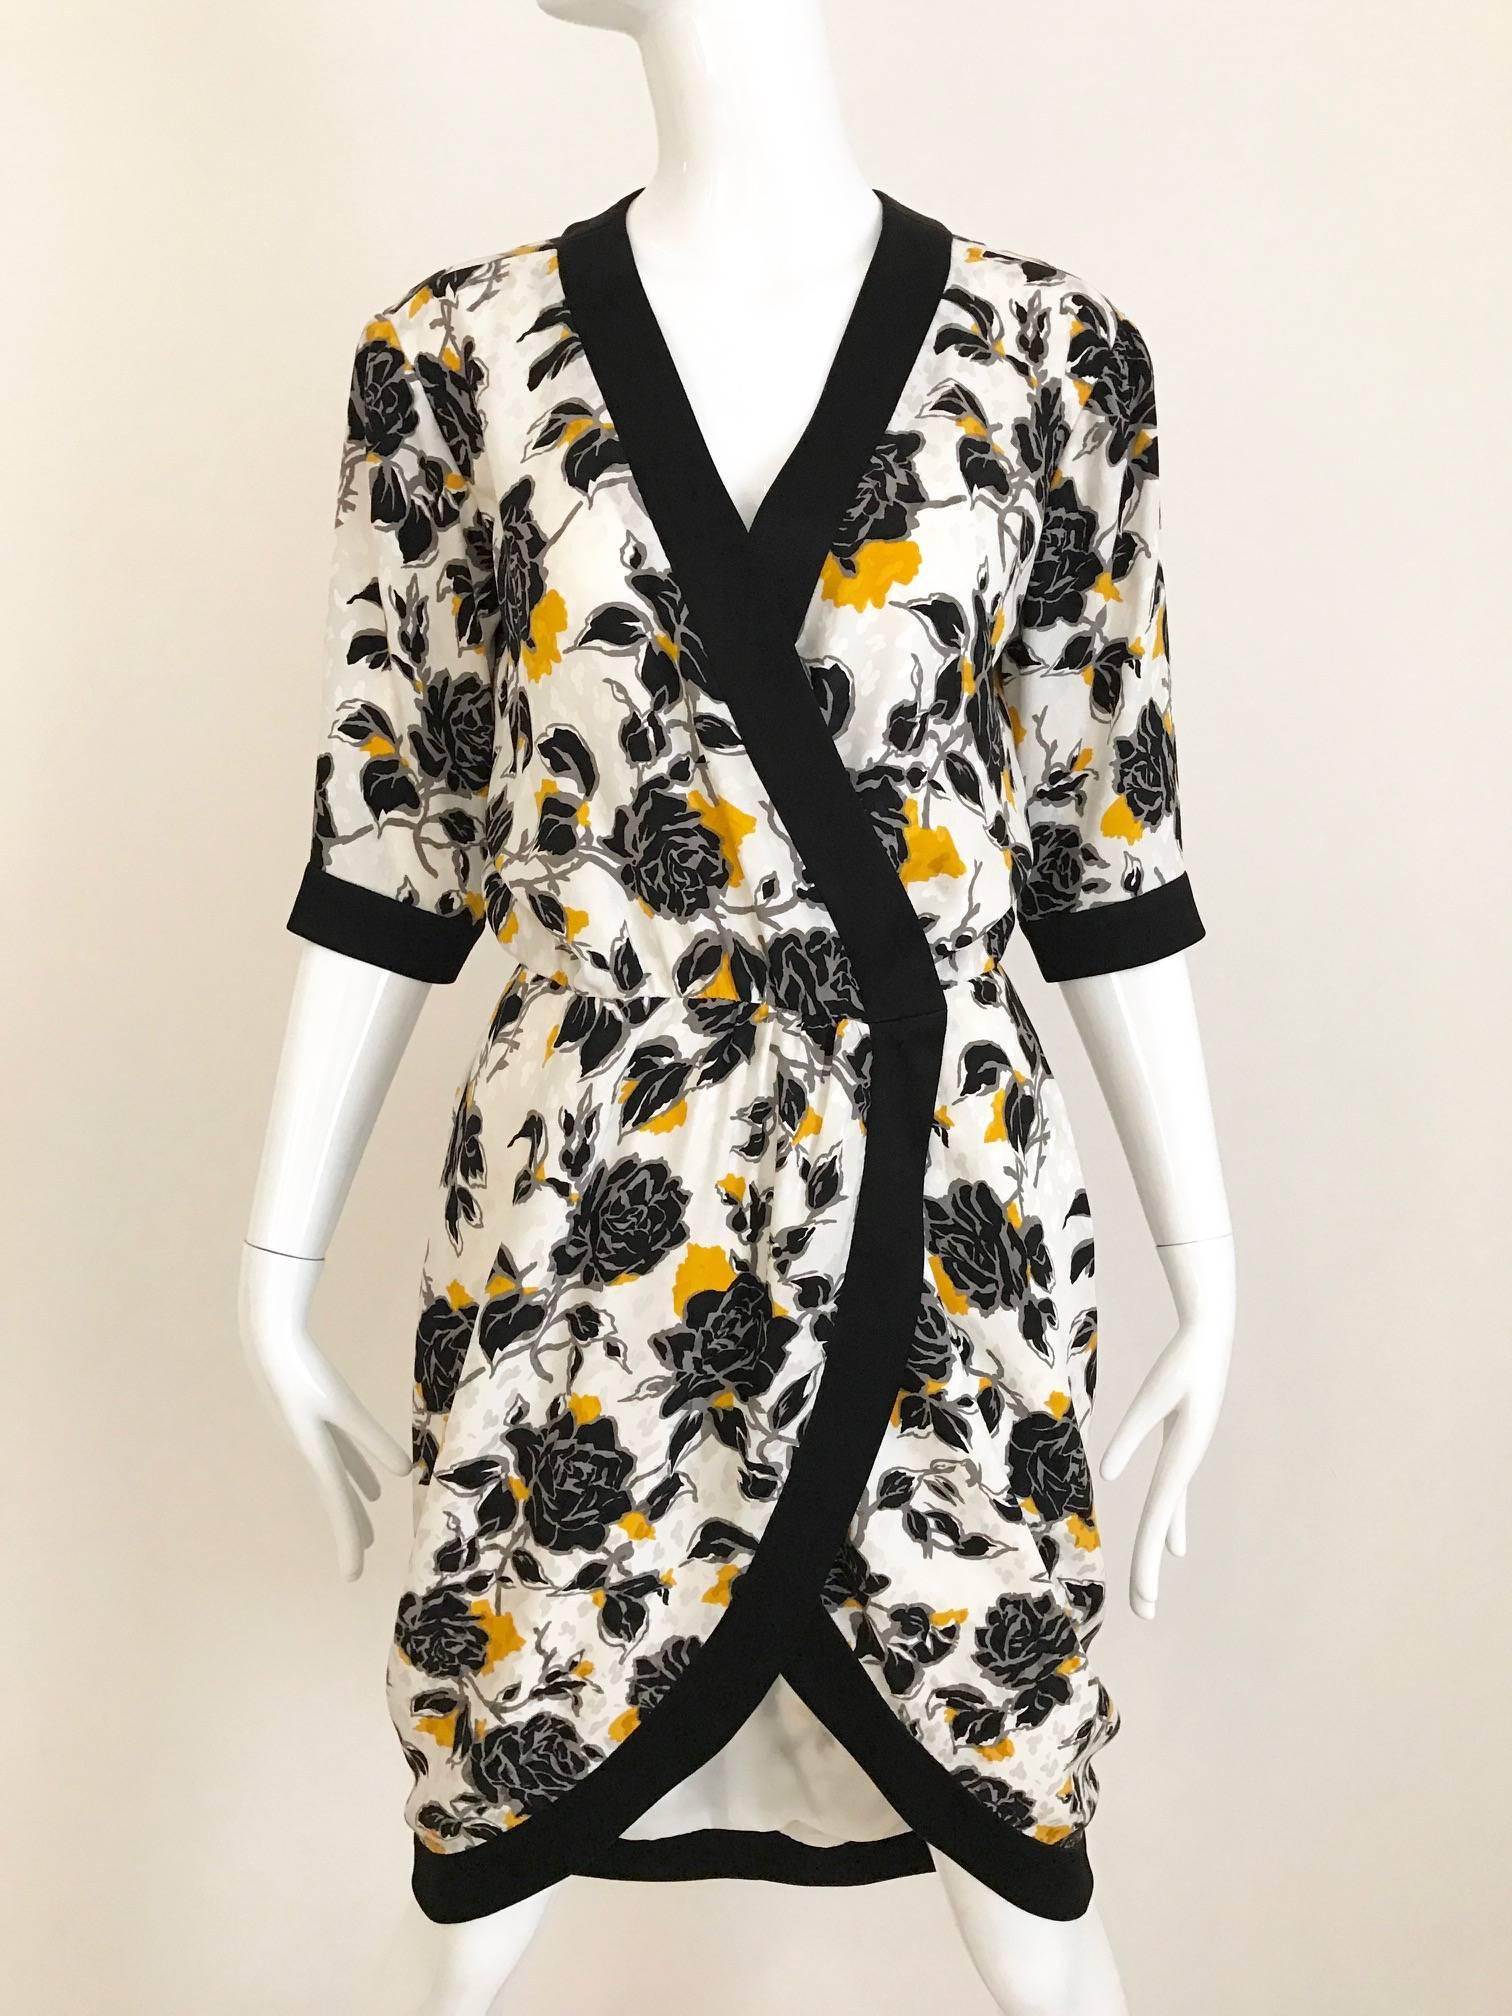 1980er Jahre Vintage Yves Saint Laurent weiß, schwarz und gelb Rose Druck Seide wickeln Sommerkleid. Schwarze Seidenpaspeln an den Ärmeln und am V-Kragen. Haken und Ösenverschluss. 
Das Kleid ist mit einem verstellbaren Judith-Leiber-Ledergürtel mit